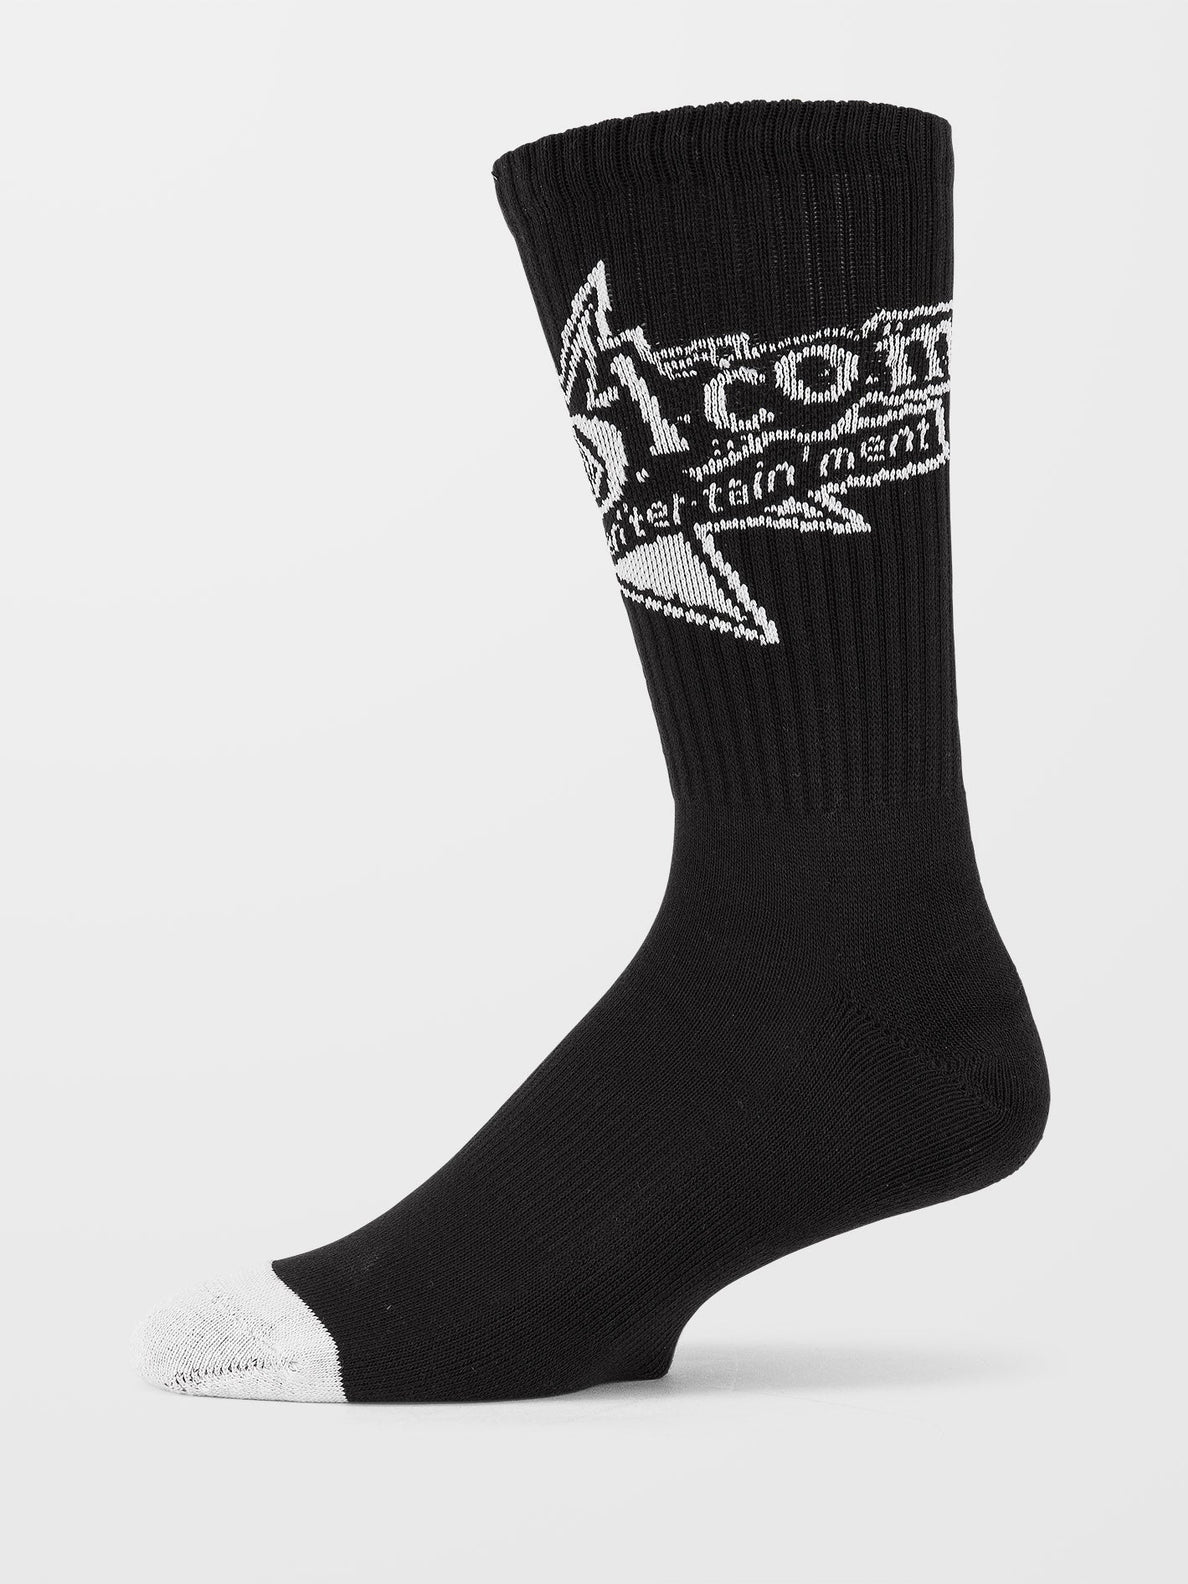 Volcom V Ent Sock Premium Temple Sarcelle | Boutique Volcom | Chaussettes | Collection_Zalando | Nouveaux produits | Produits les plus récents | Produits les plus vendus | surfdevils.com